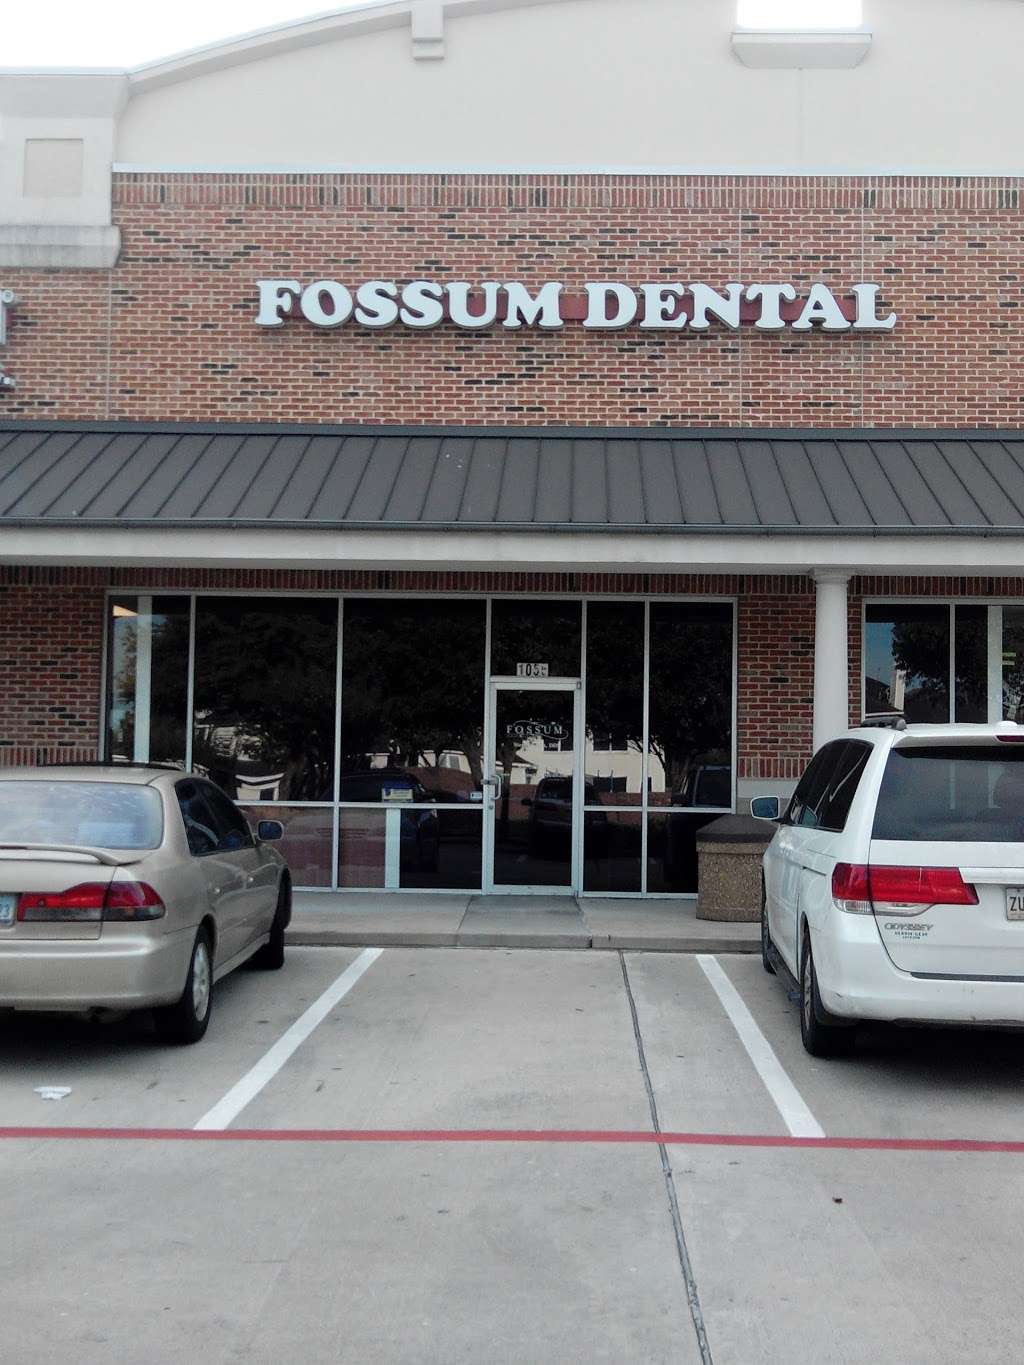 Fossum Family Dental Care: Fossum Steven G DDS | 8019 West Grand Parkway South, Richmond, TX 77407, USA | Phone: (832) 595-2266